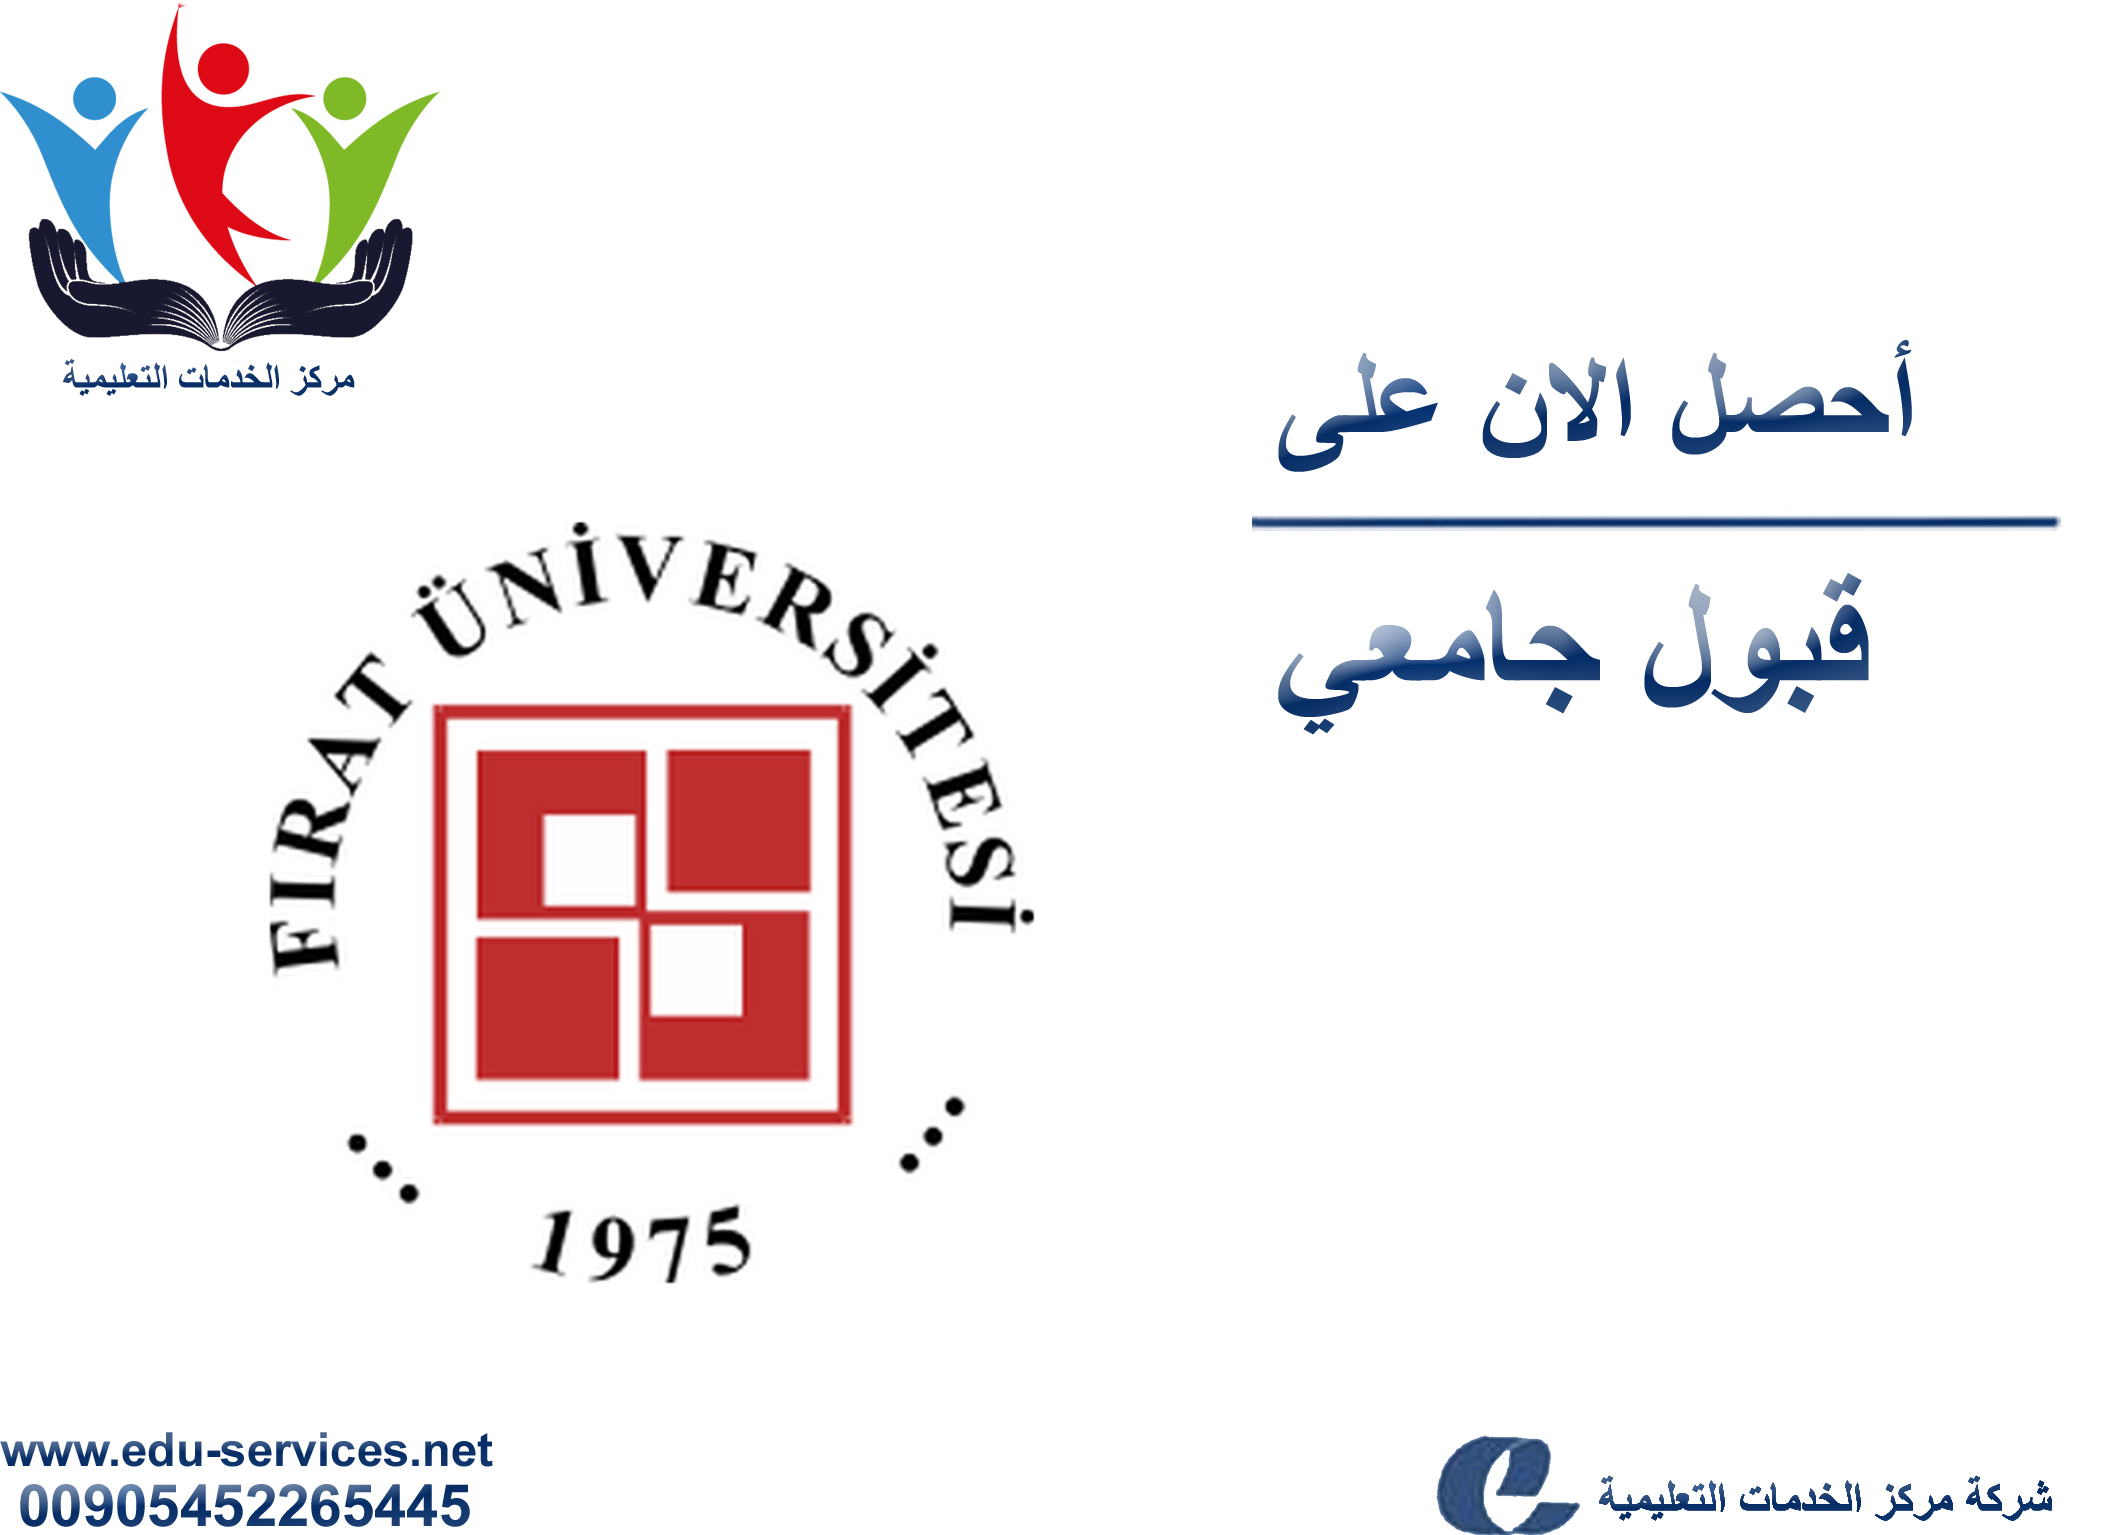 افتتاح التسجيل في جامعة فرات للعام 2018-2019